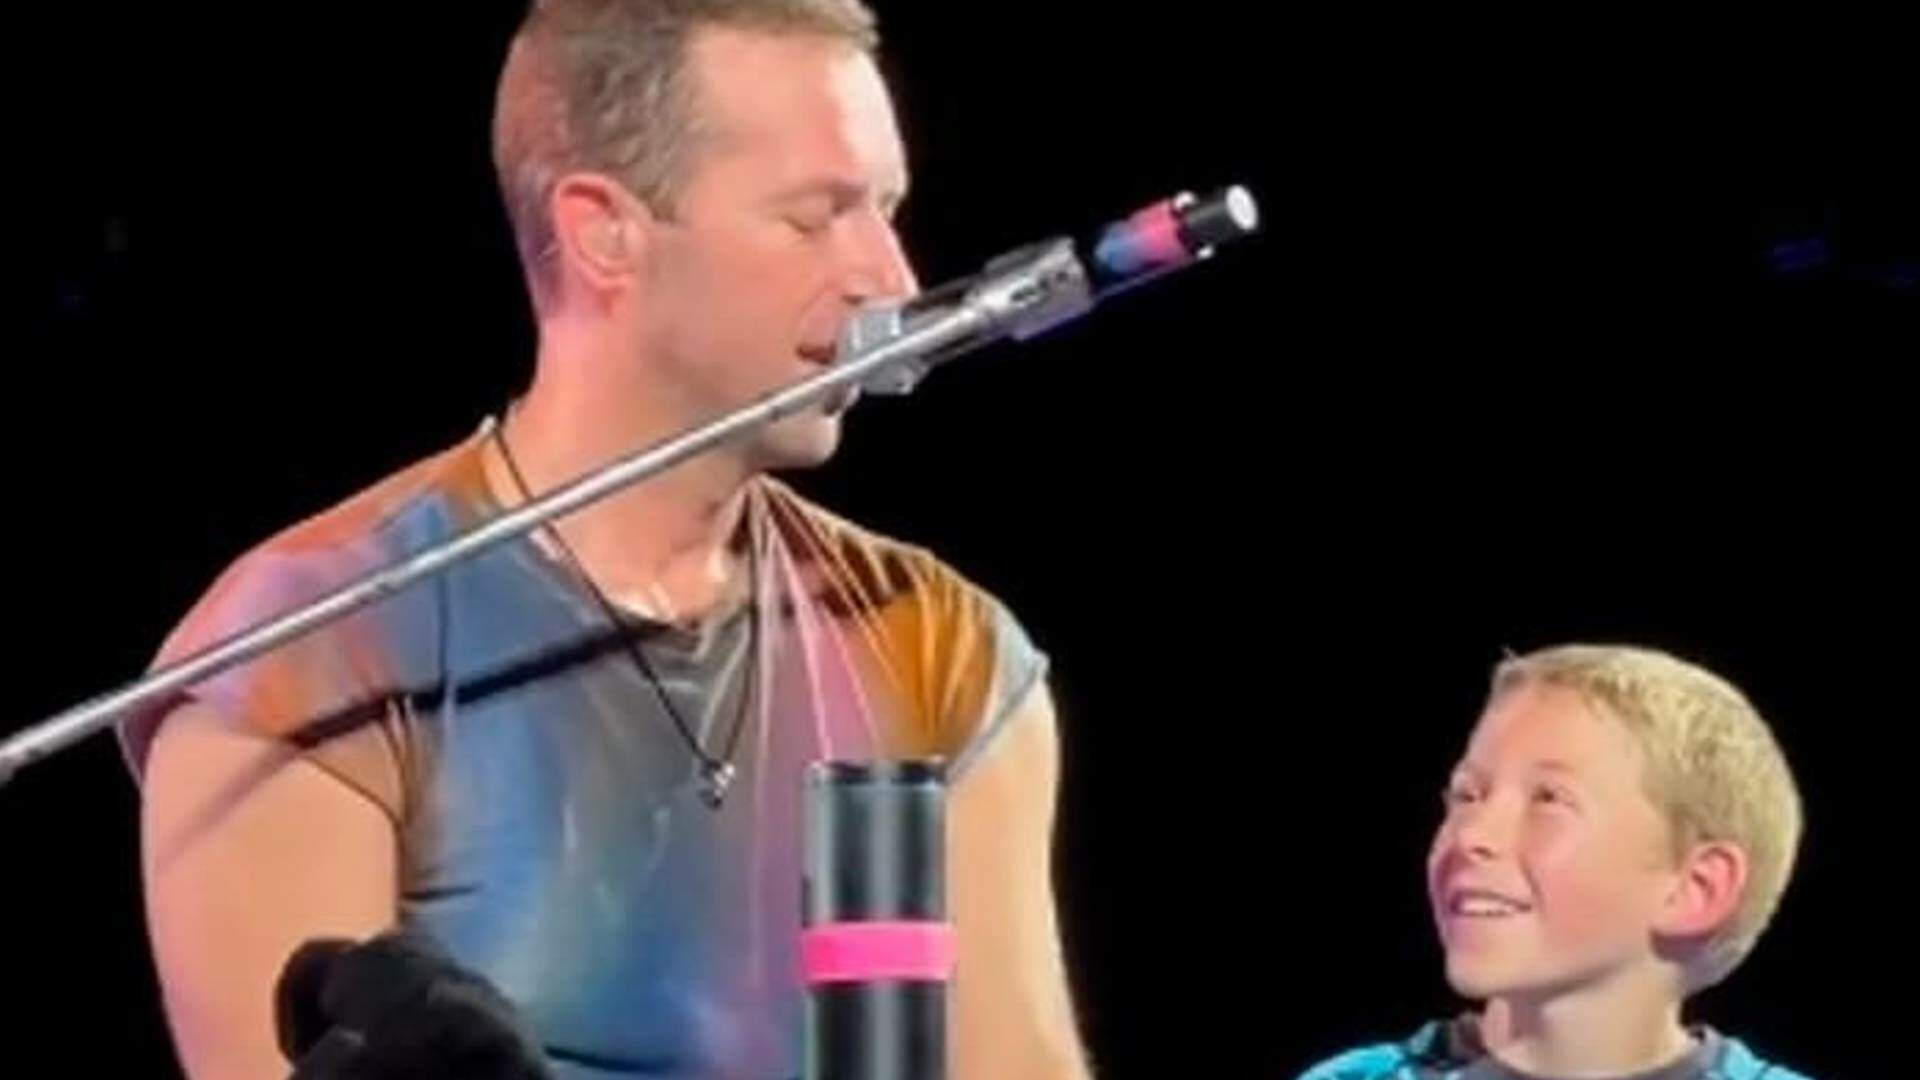 Presente dos sonhos! Chris Martin faz surpresa especial para fã mirim que celebrou seu aniversário no show do Coldplay - Metropolitana FM